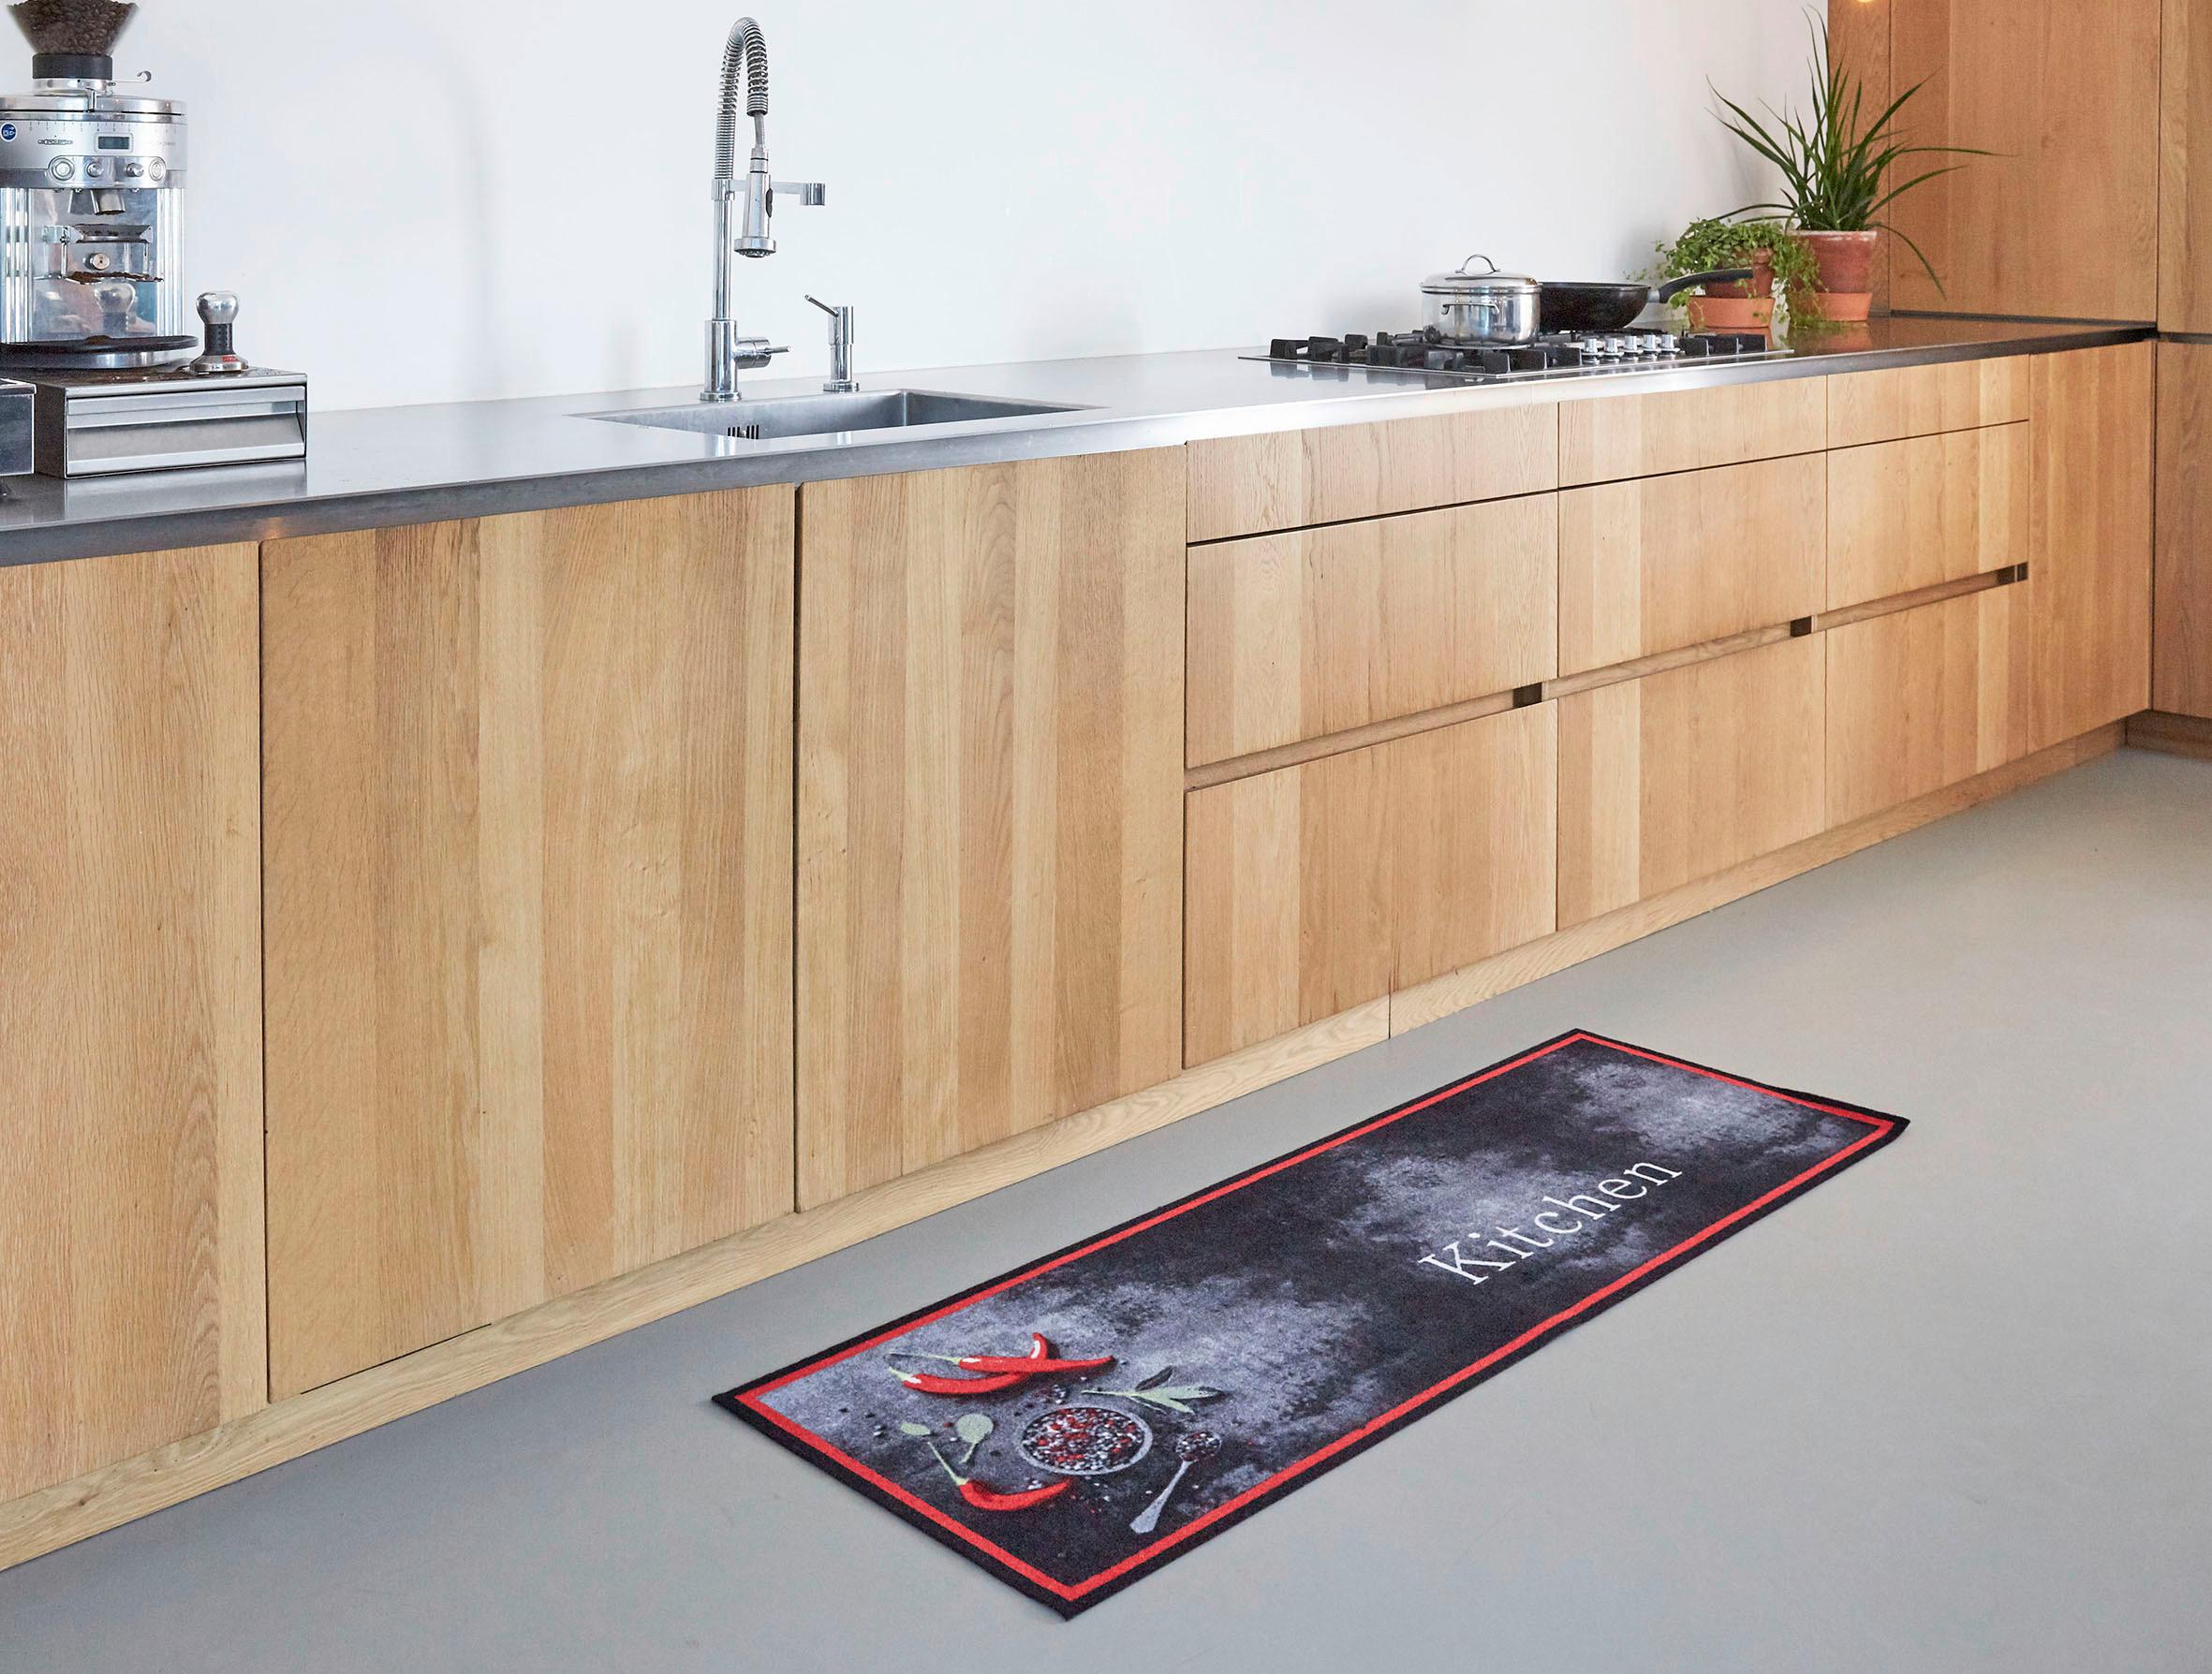 Dveřní Rohožka Kitchen, 50/150cm - antracitová/červená, Moderní, textil (50/150cm) - Modern Living